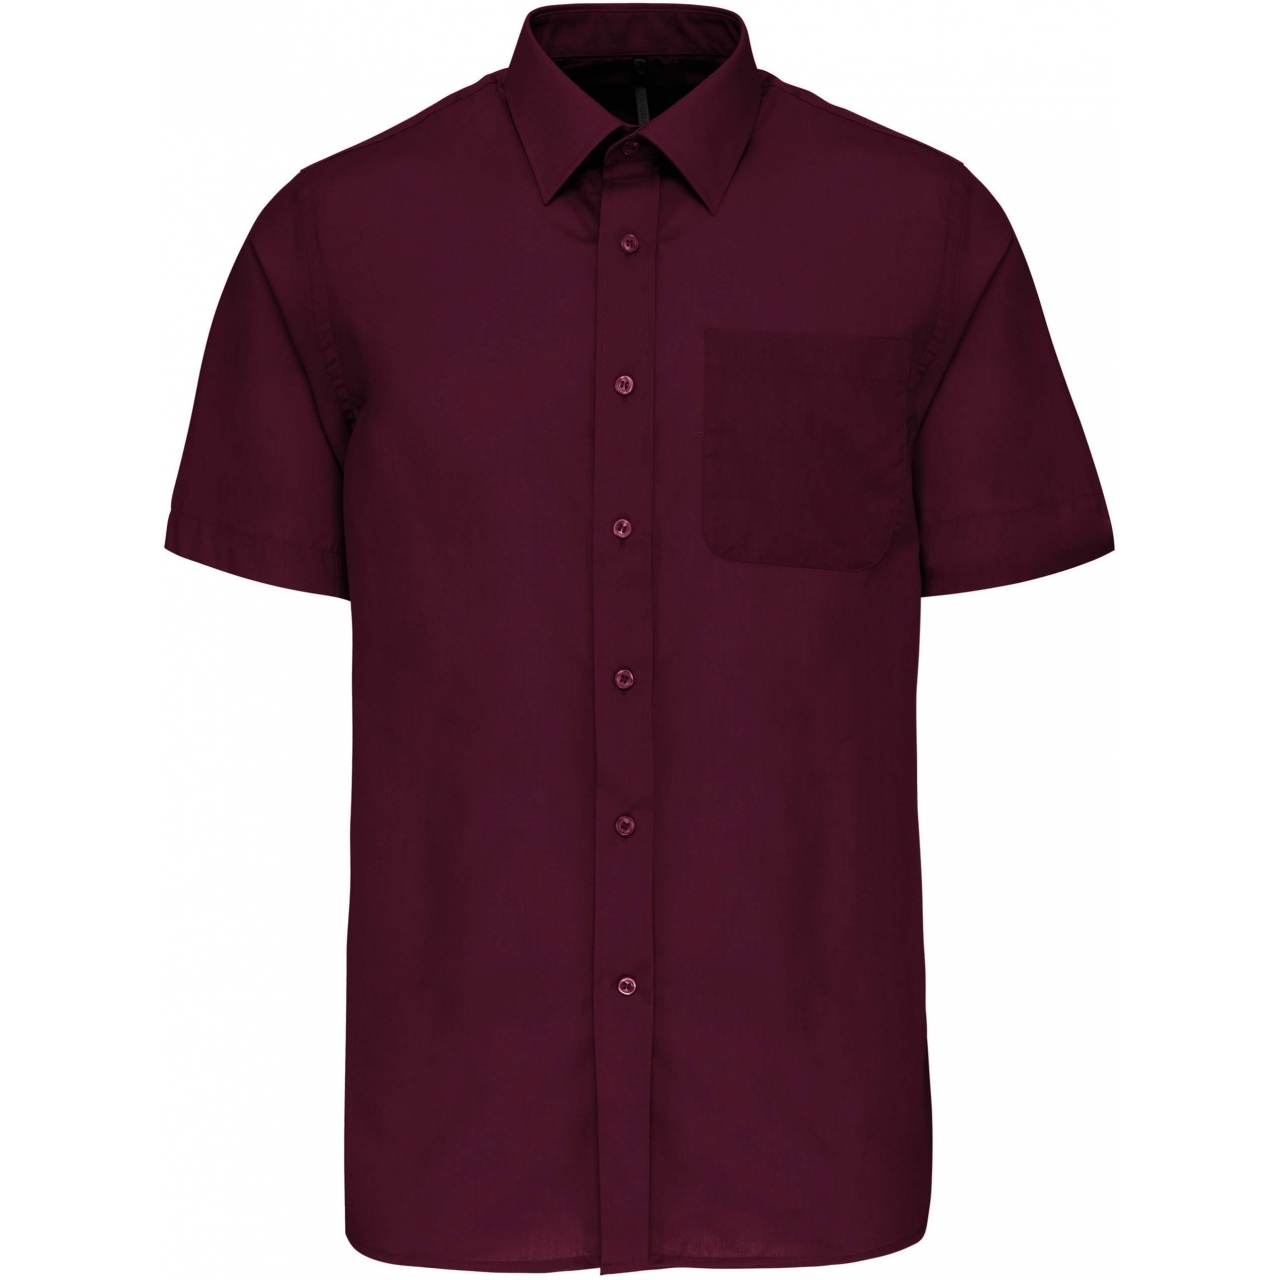 Pánská košile s krátkým rukávem Kariban ACE - tmavě červená, XL